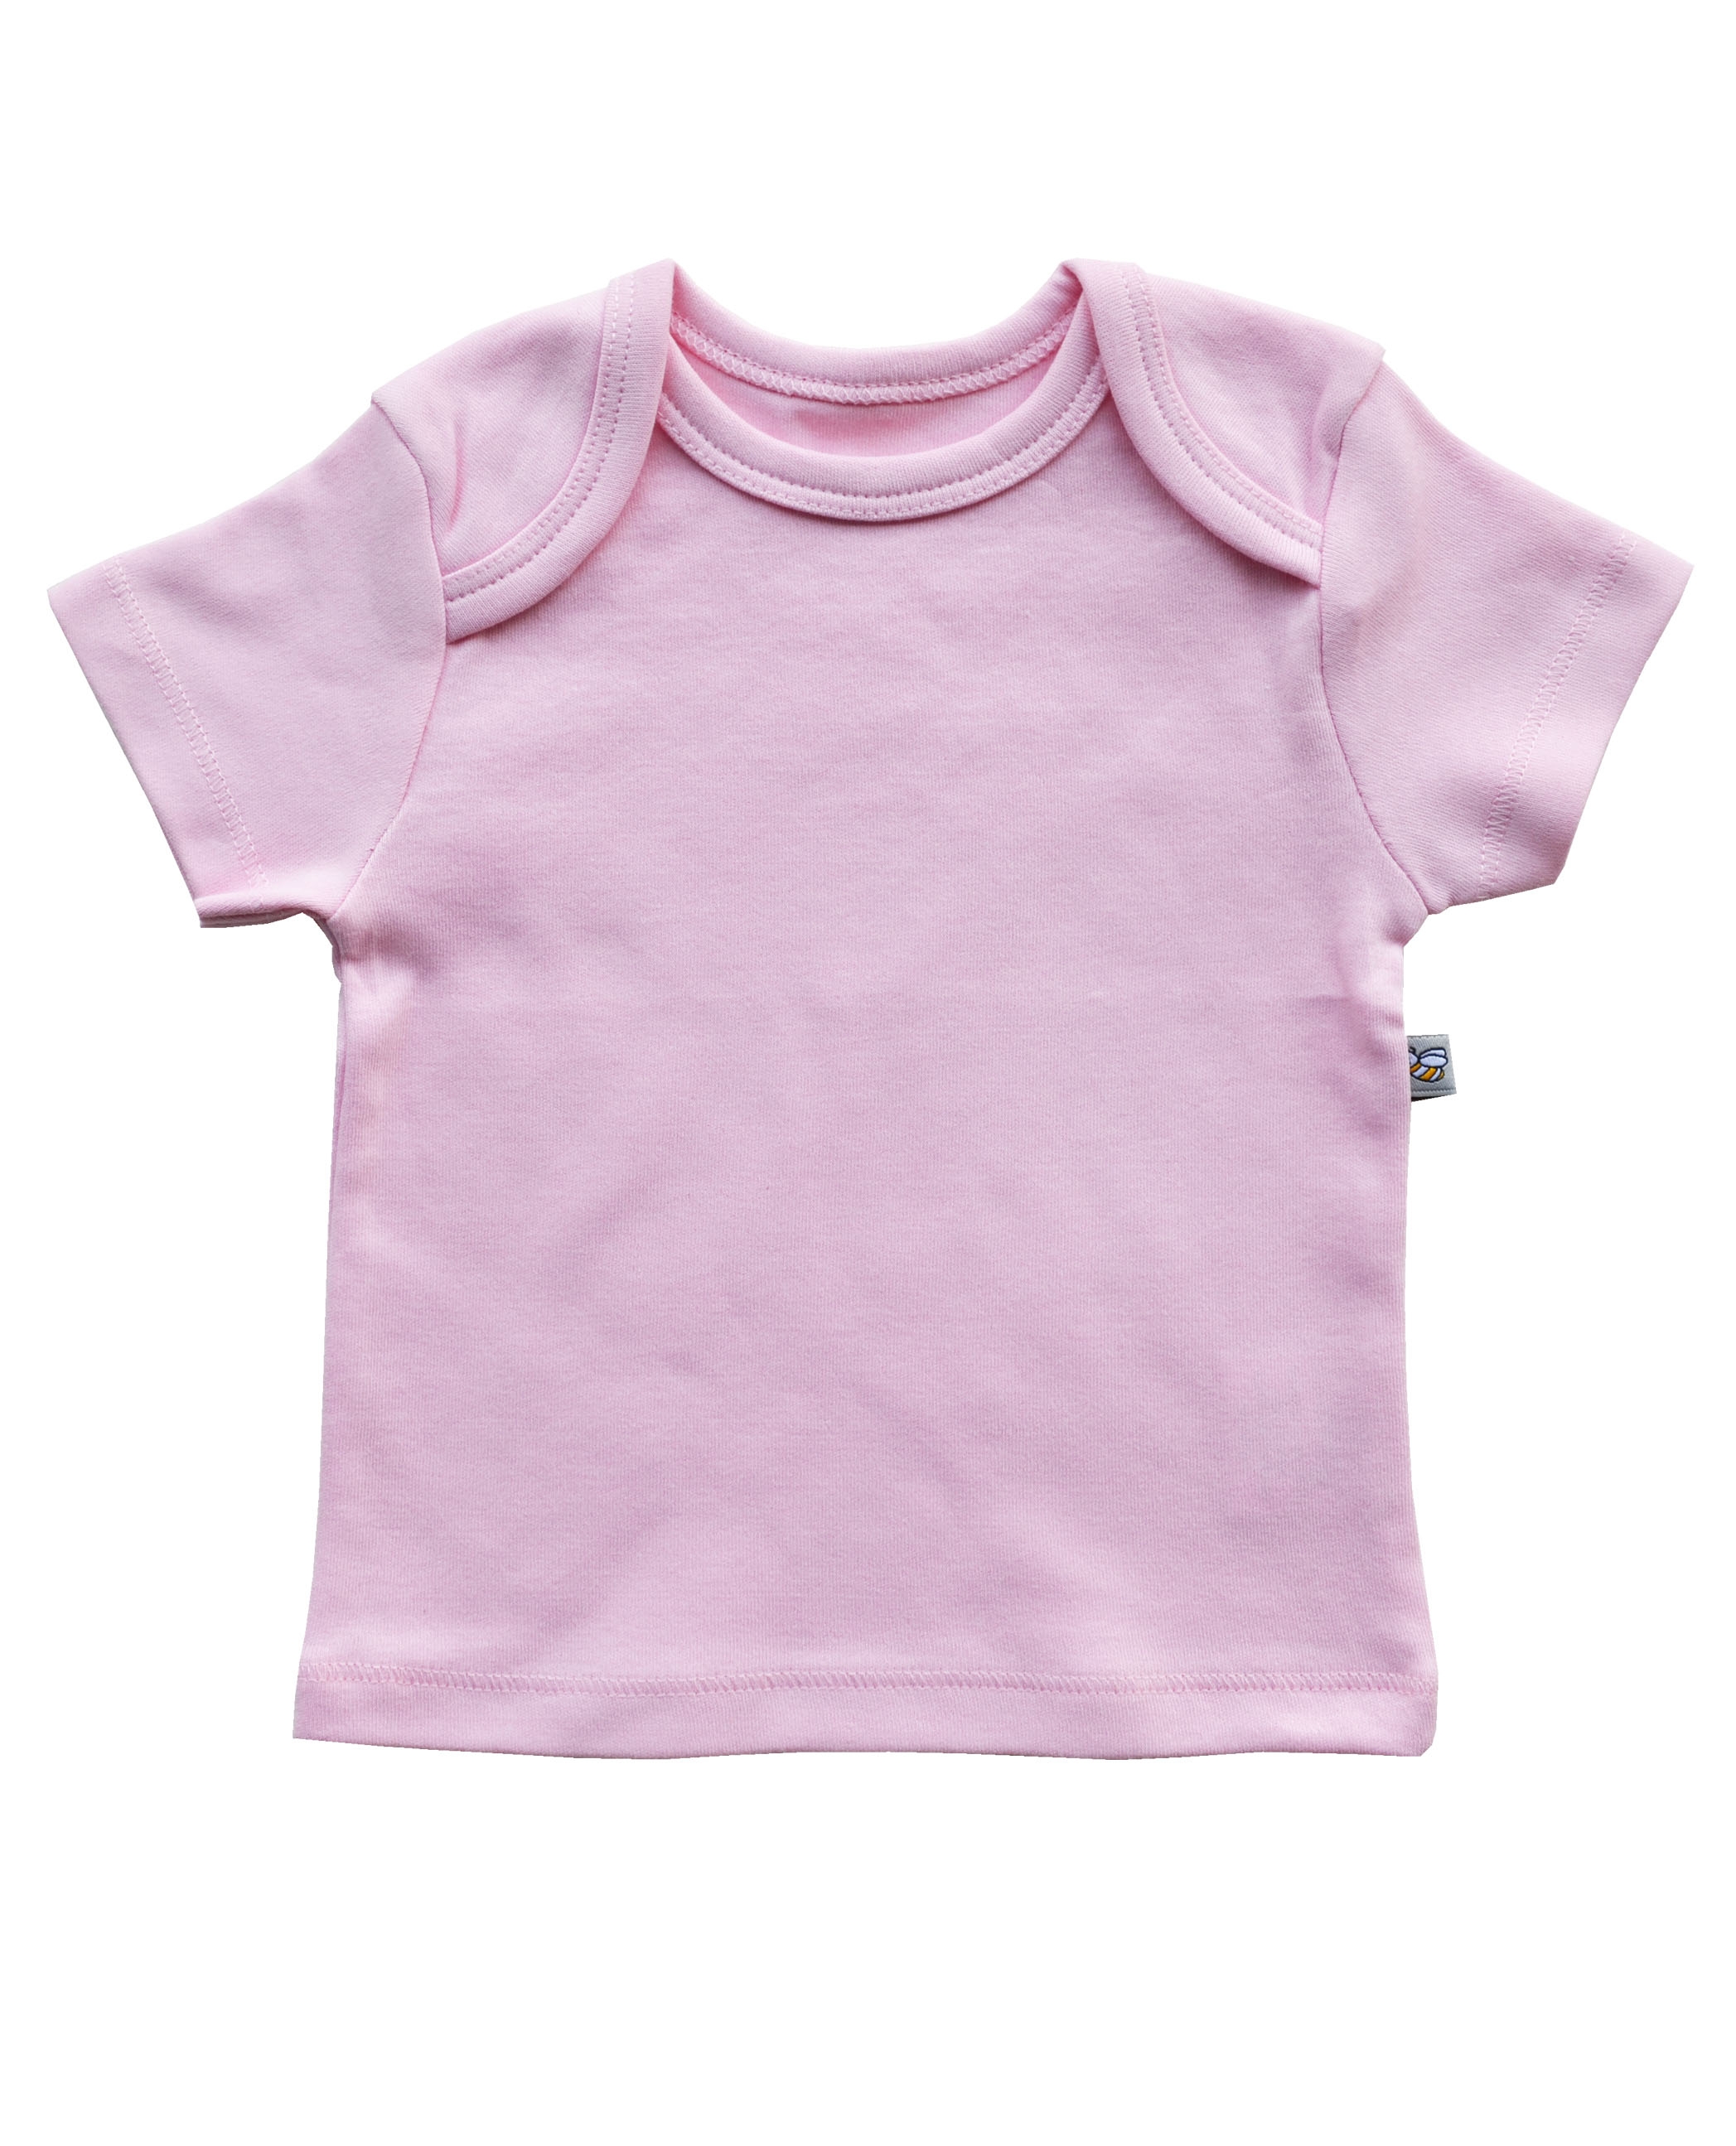 Babeez | Pink Short Sleeve Top (100% Cotton Interlock Biowash) undefined